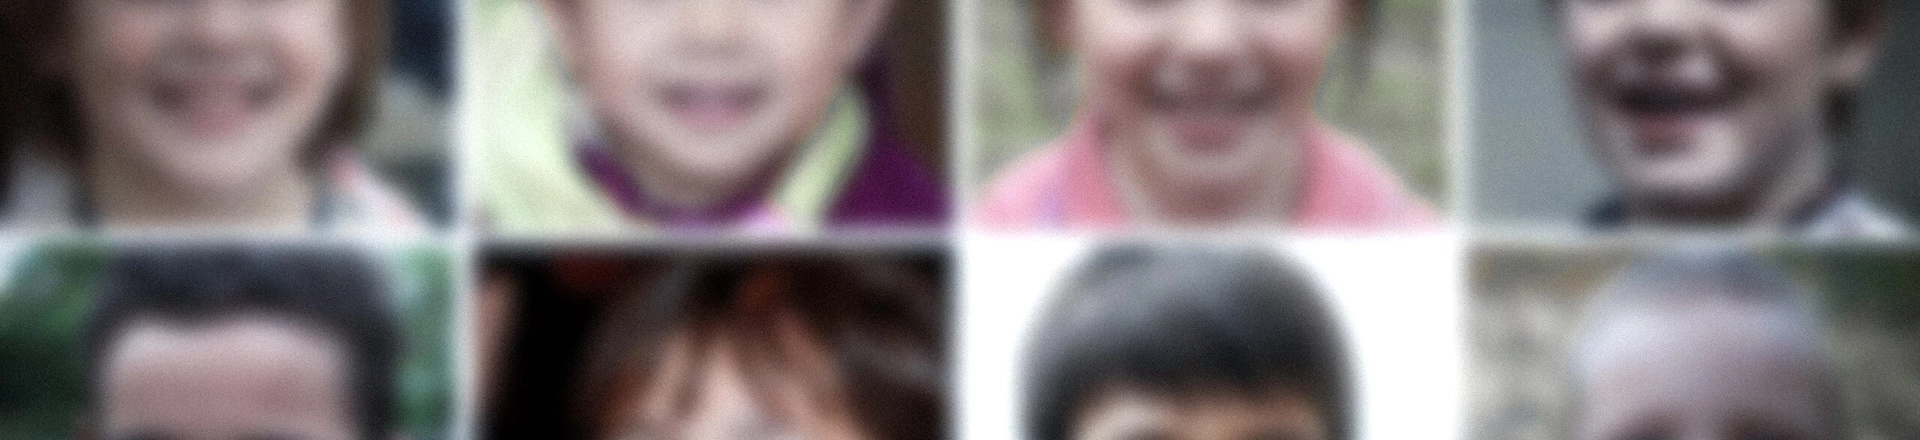 O Intercept usou imagens de rostos de crianças geradas por inteligência artificial para uma pesquisa na PimEyes, banco de dados de reconhecimento facial.